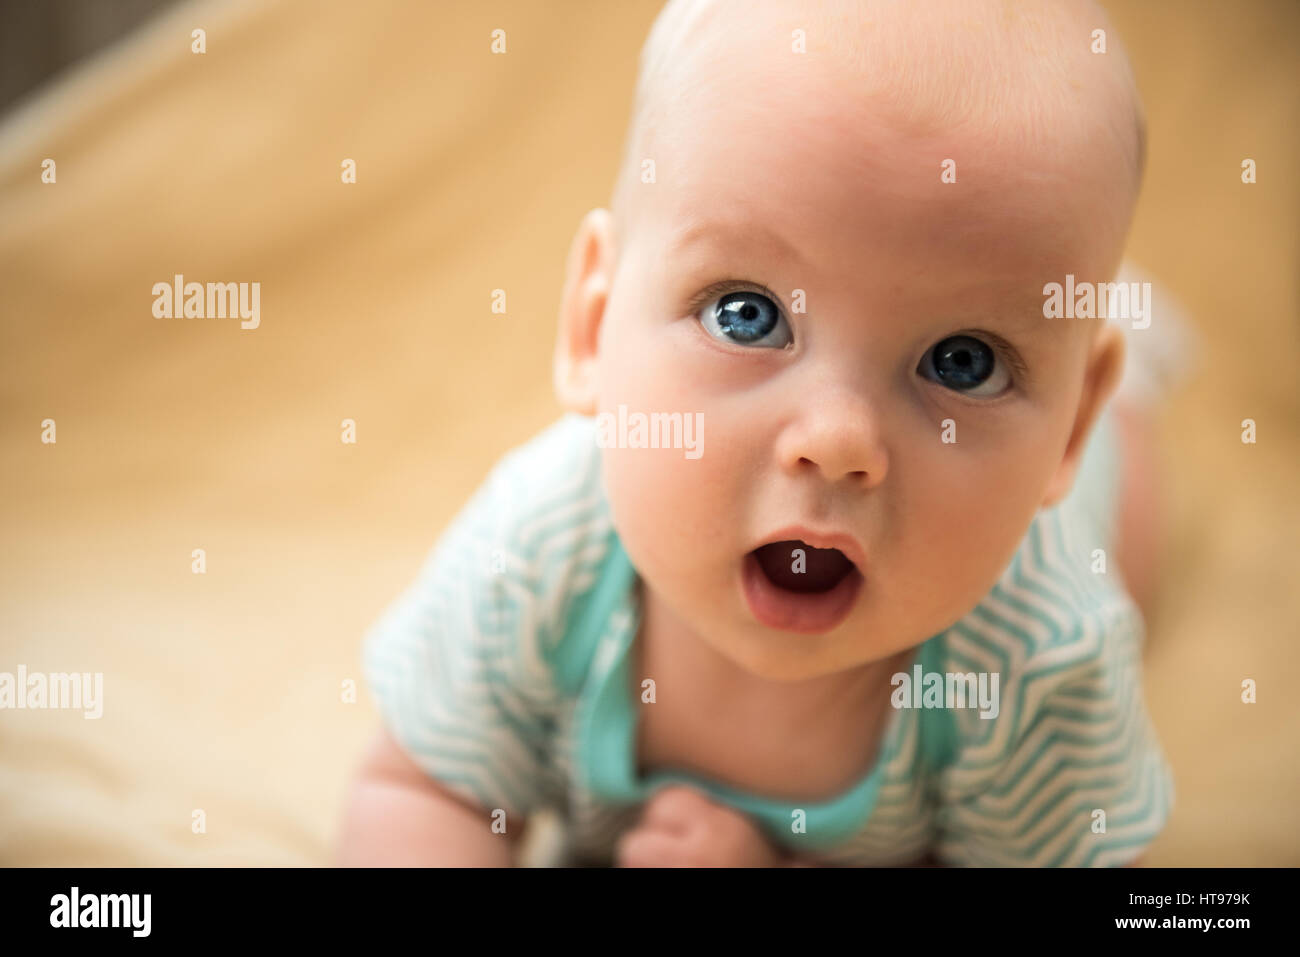 cute dreamly little baby girl portrait Stock Photo